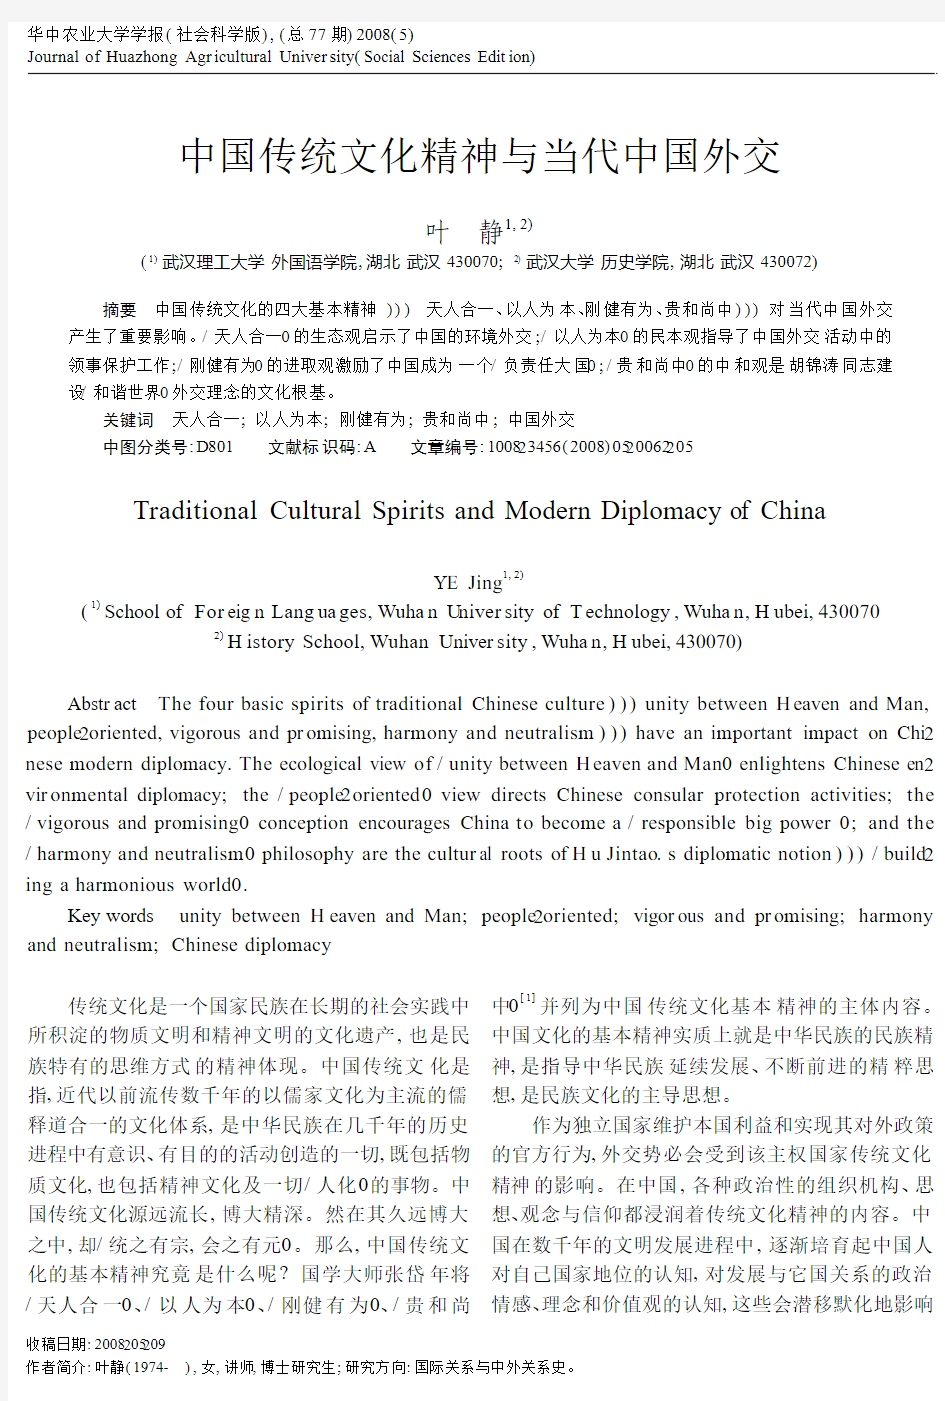 中国传统文化精神与当代中国外交